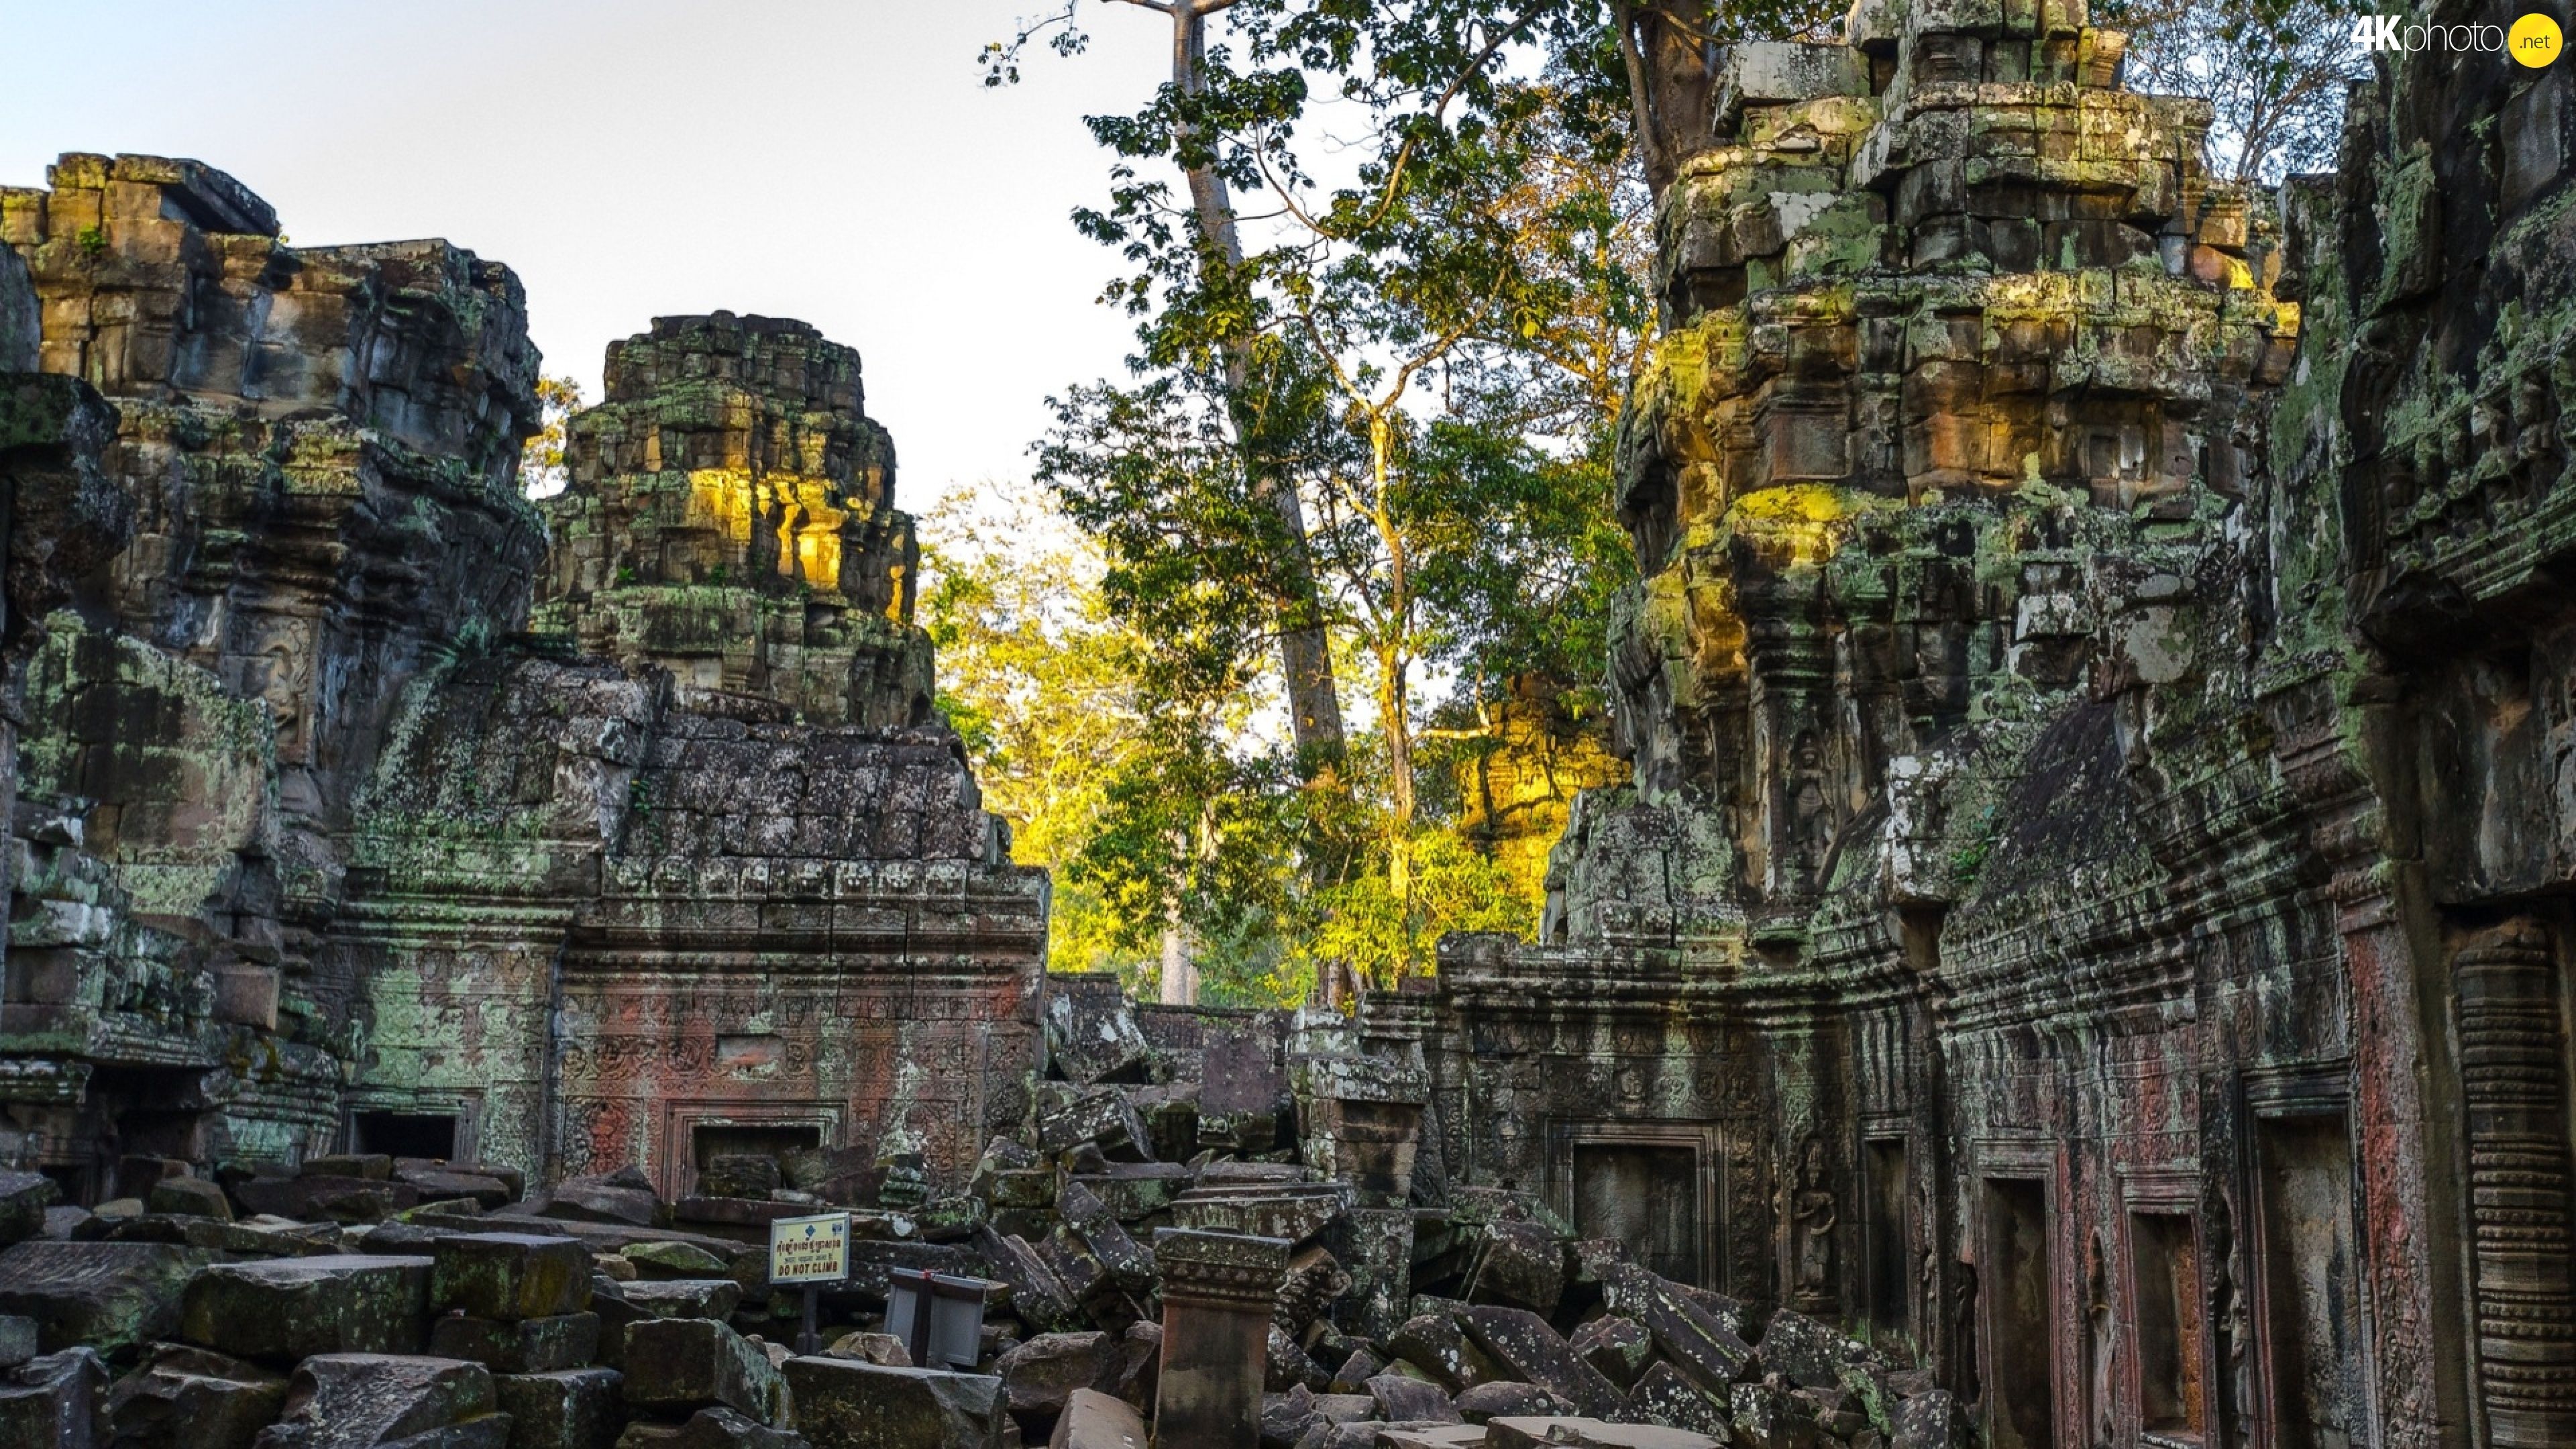 trees, temple, viewes, Angkor Wat, Cambodia, ruins jigsaw